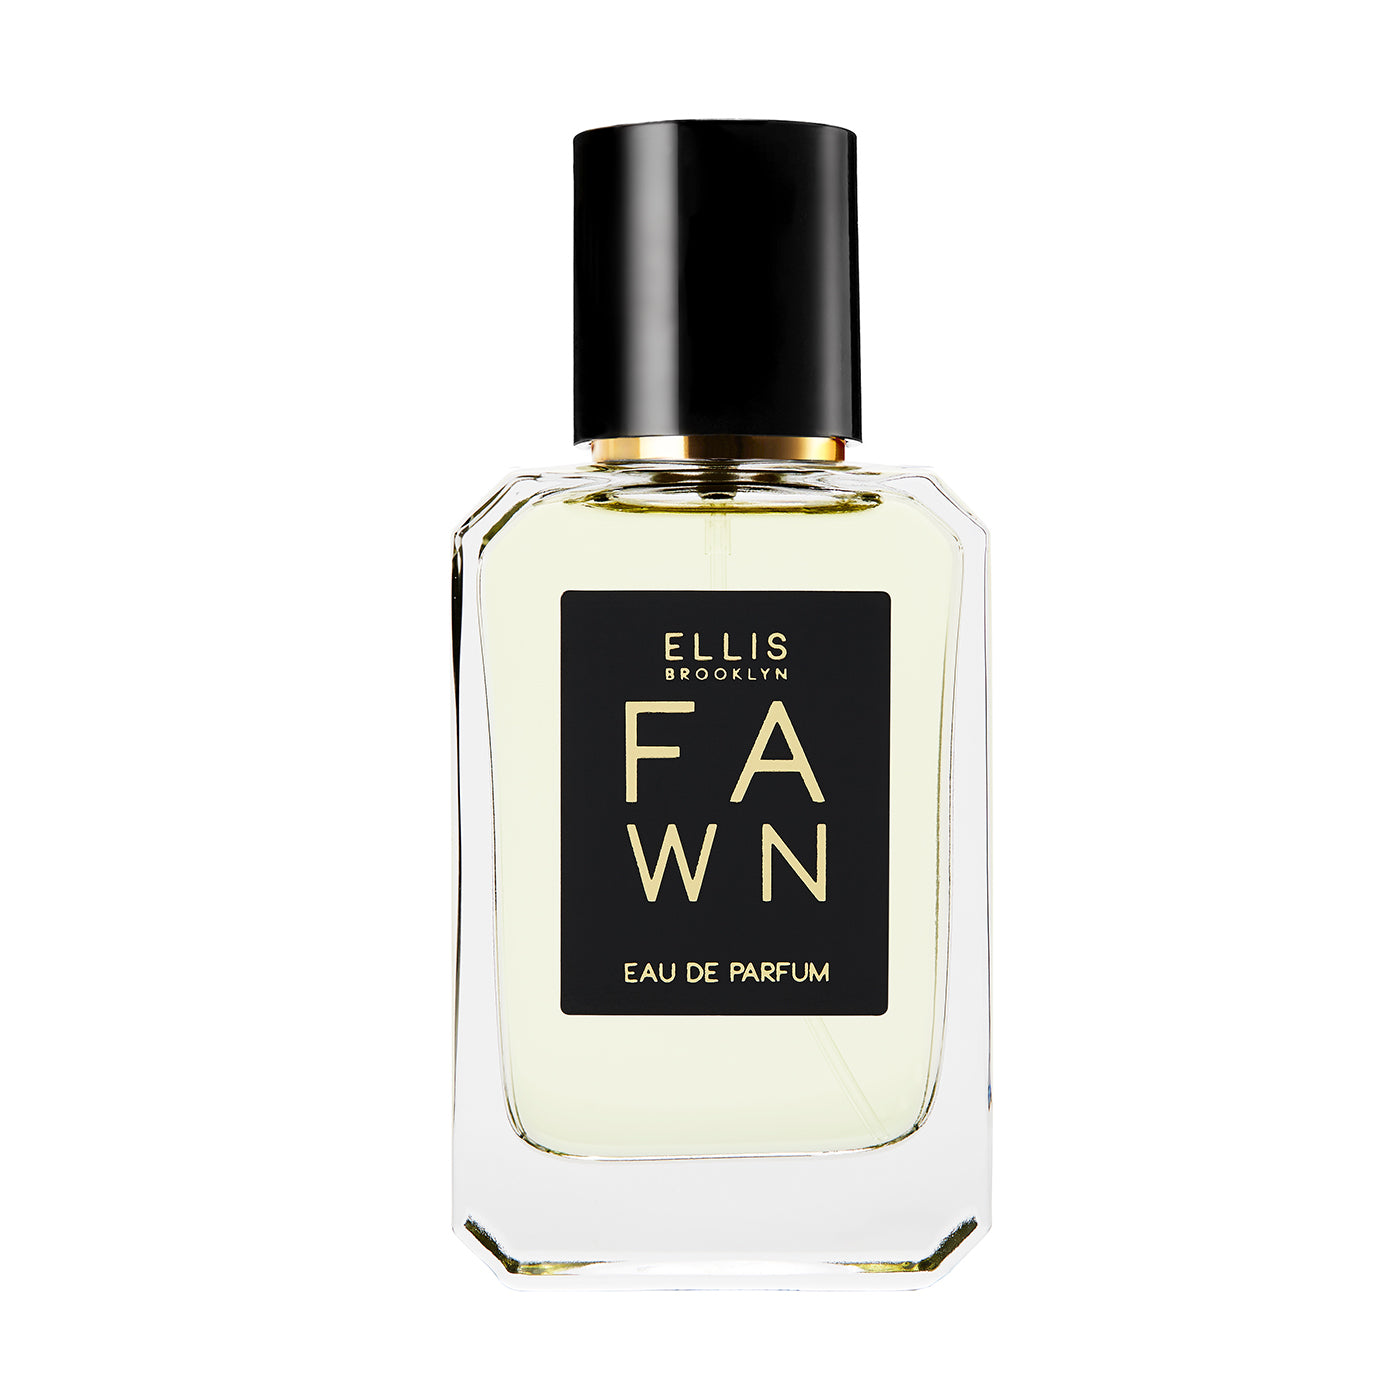 Ellis Brooklyn Eau de Parfum - Fawn